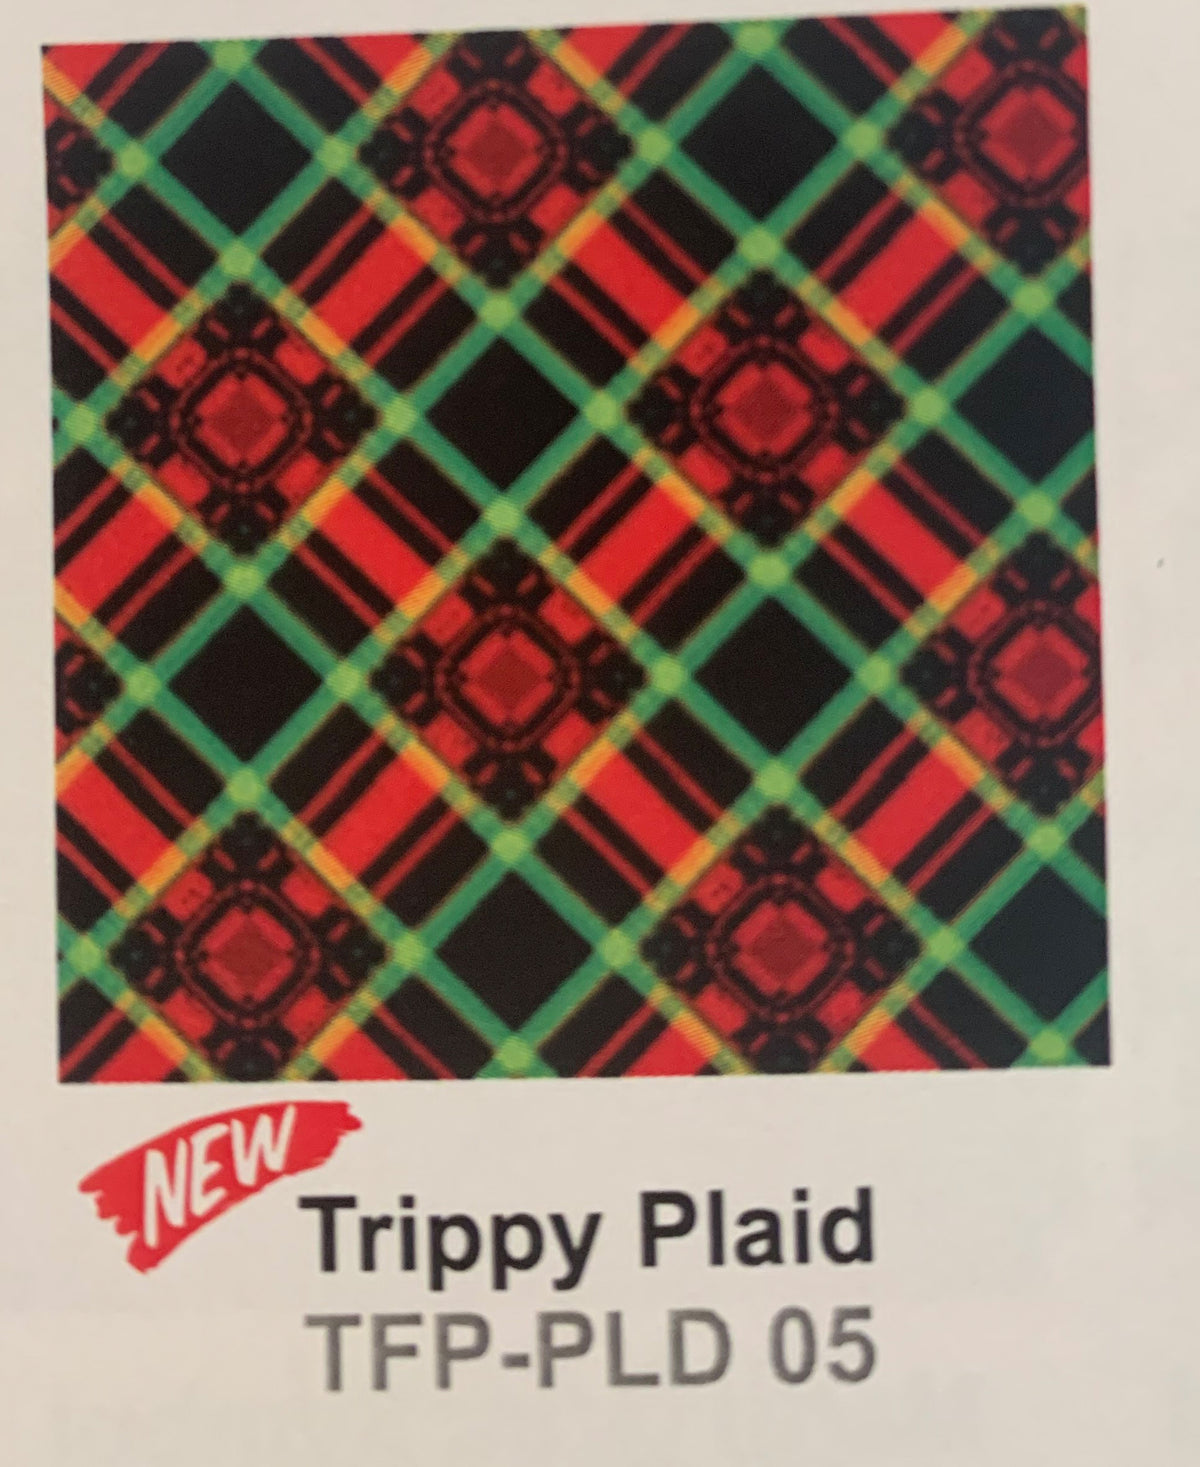 ThermoFlex Fashion Patterns - Trippy Plaid